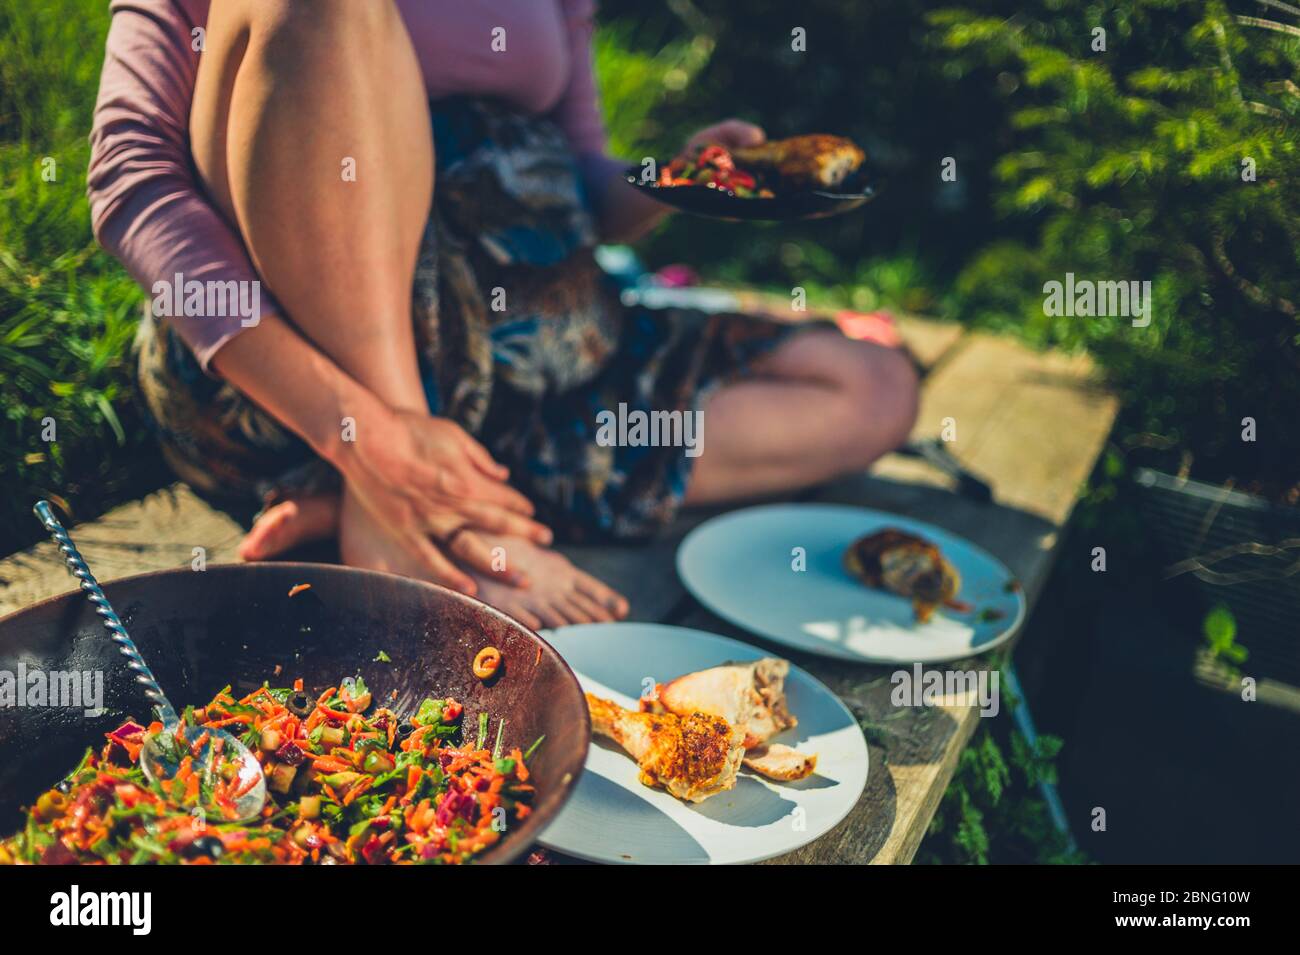 Una giovane donna sta diving insalata e pollo all'aperto in un giardino in una giornata di primavera soleggiata Foto Stock